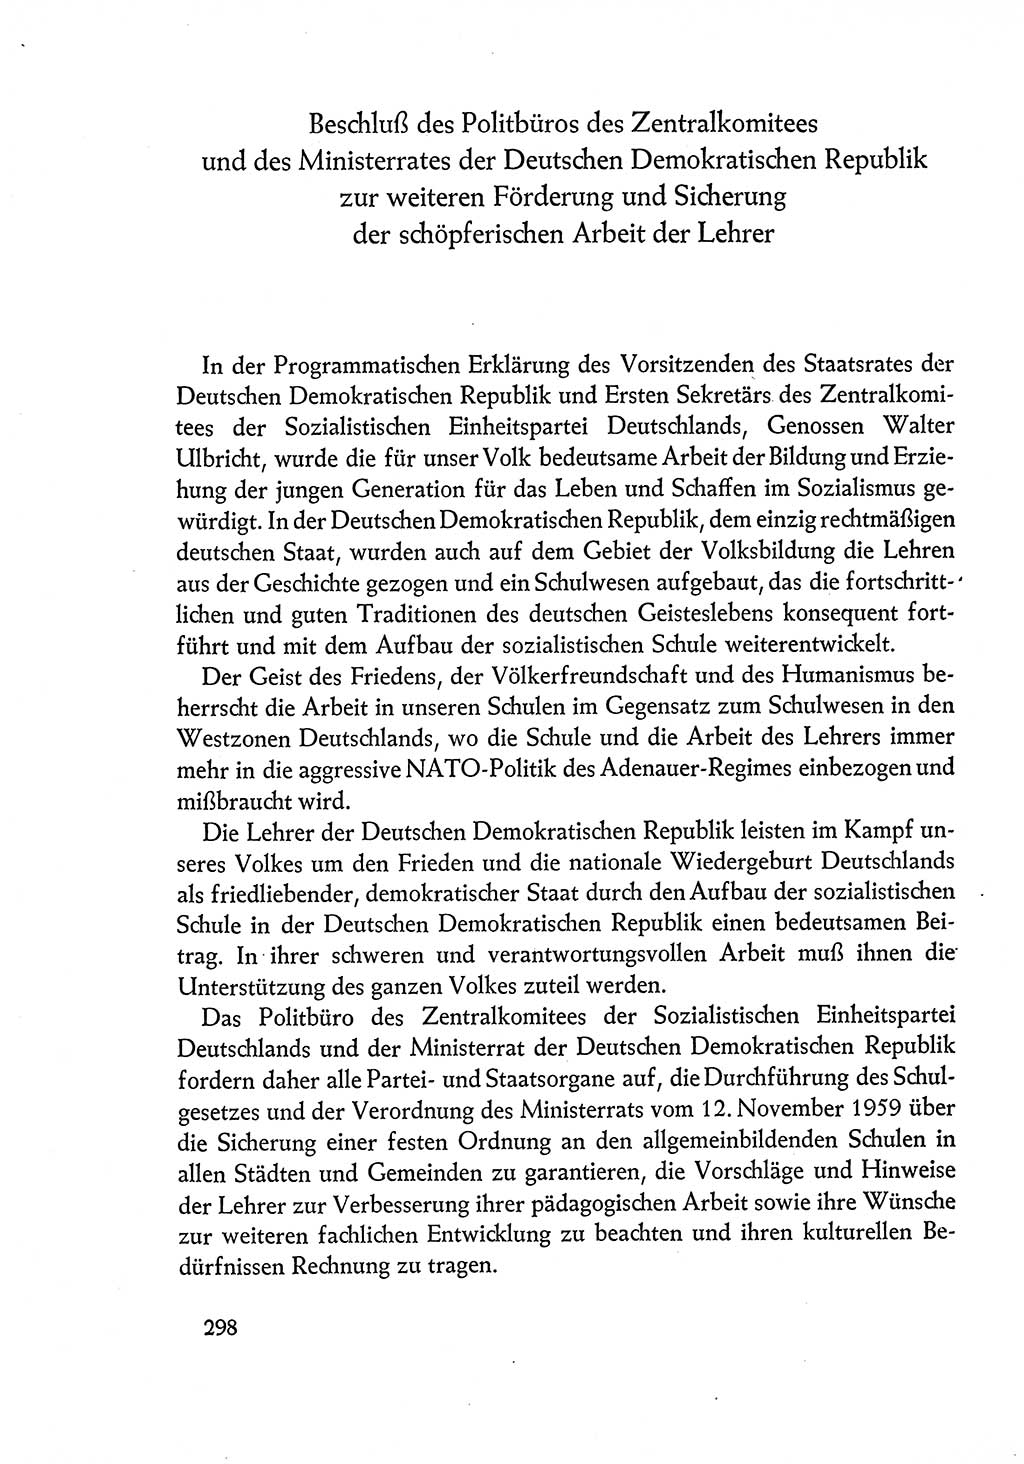 Dokumente der Sozialistischen Einheitspartei Deutschlands (SED) [Deutsche Demokratische Republik (DDR)] 1960-1961, Seite 298 (Dok. SED DDR 1960-1961, S. 298)